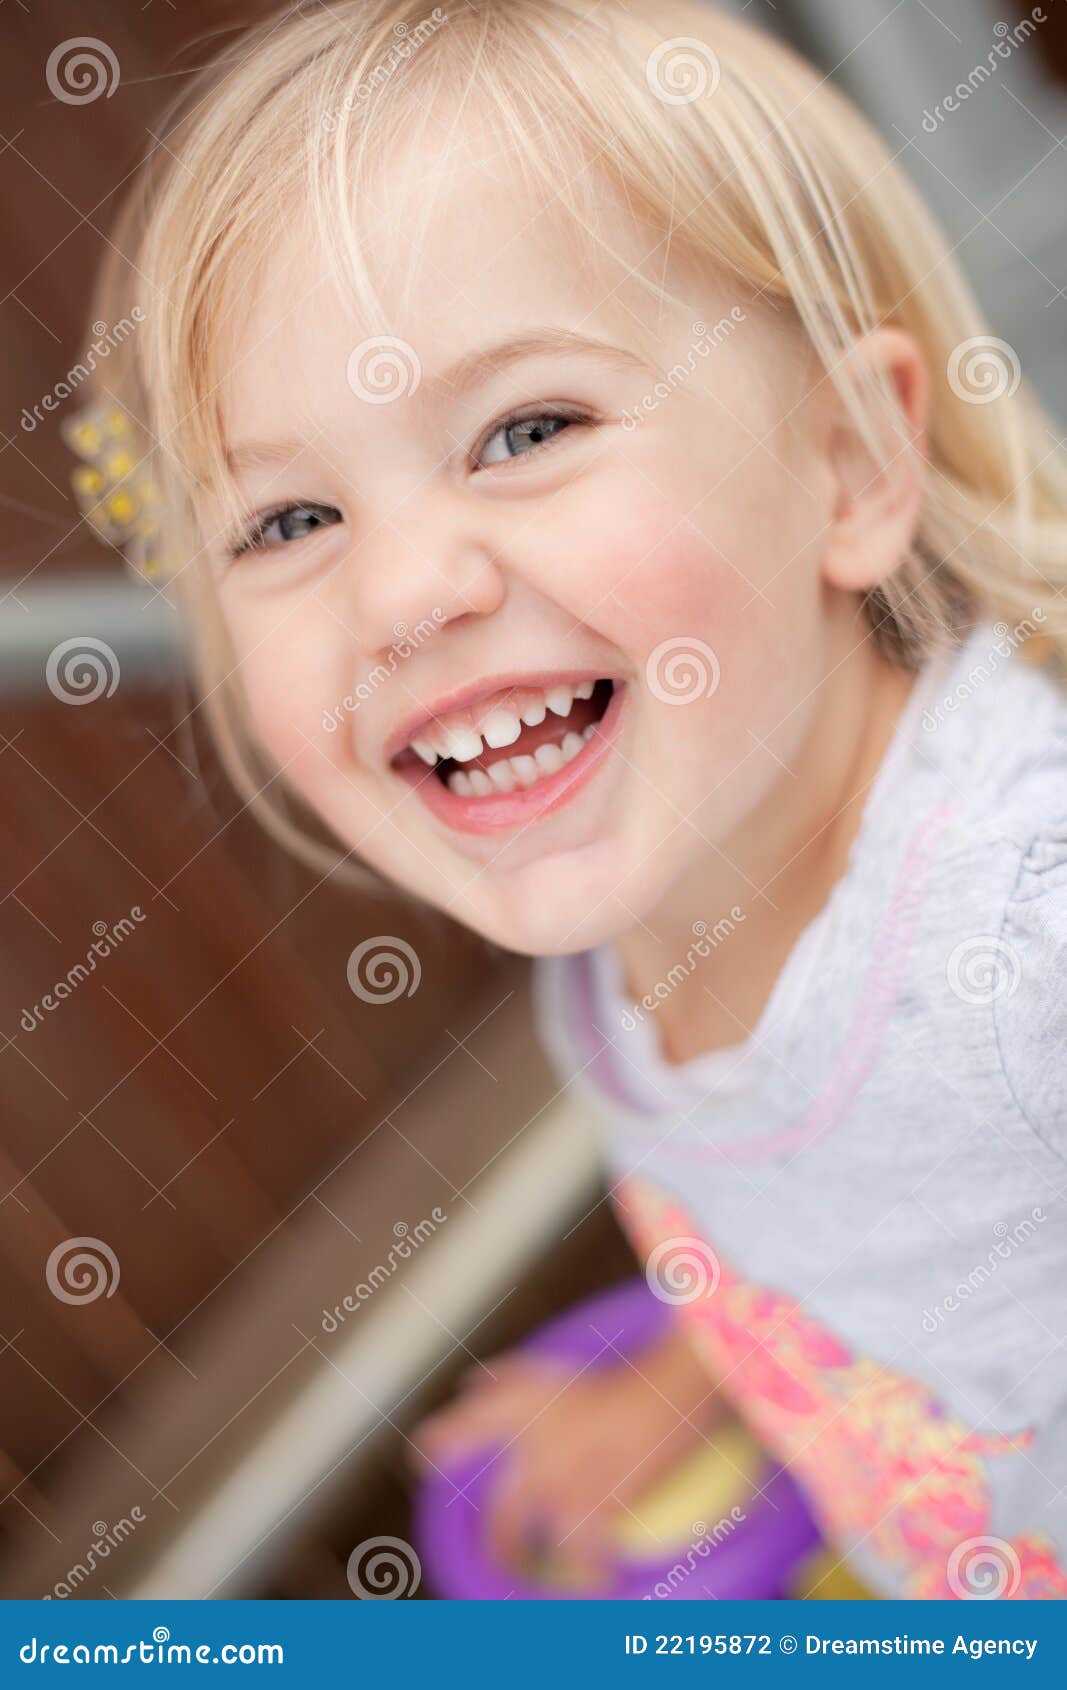 toddler laughing